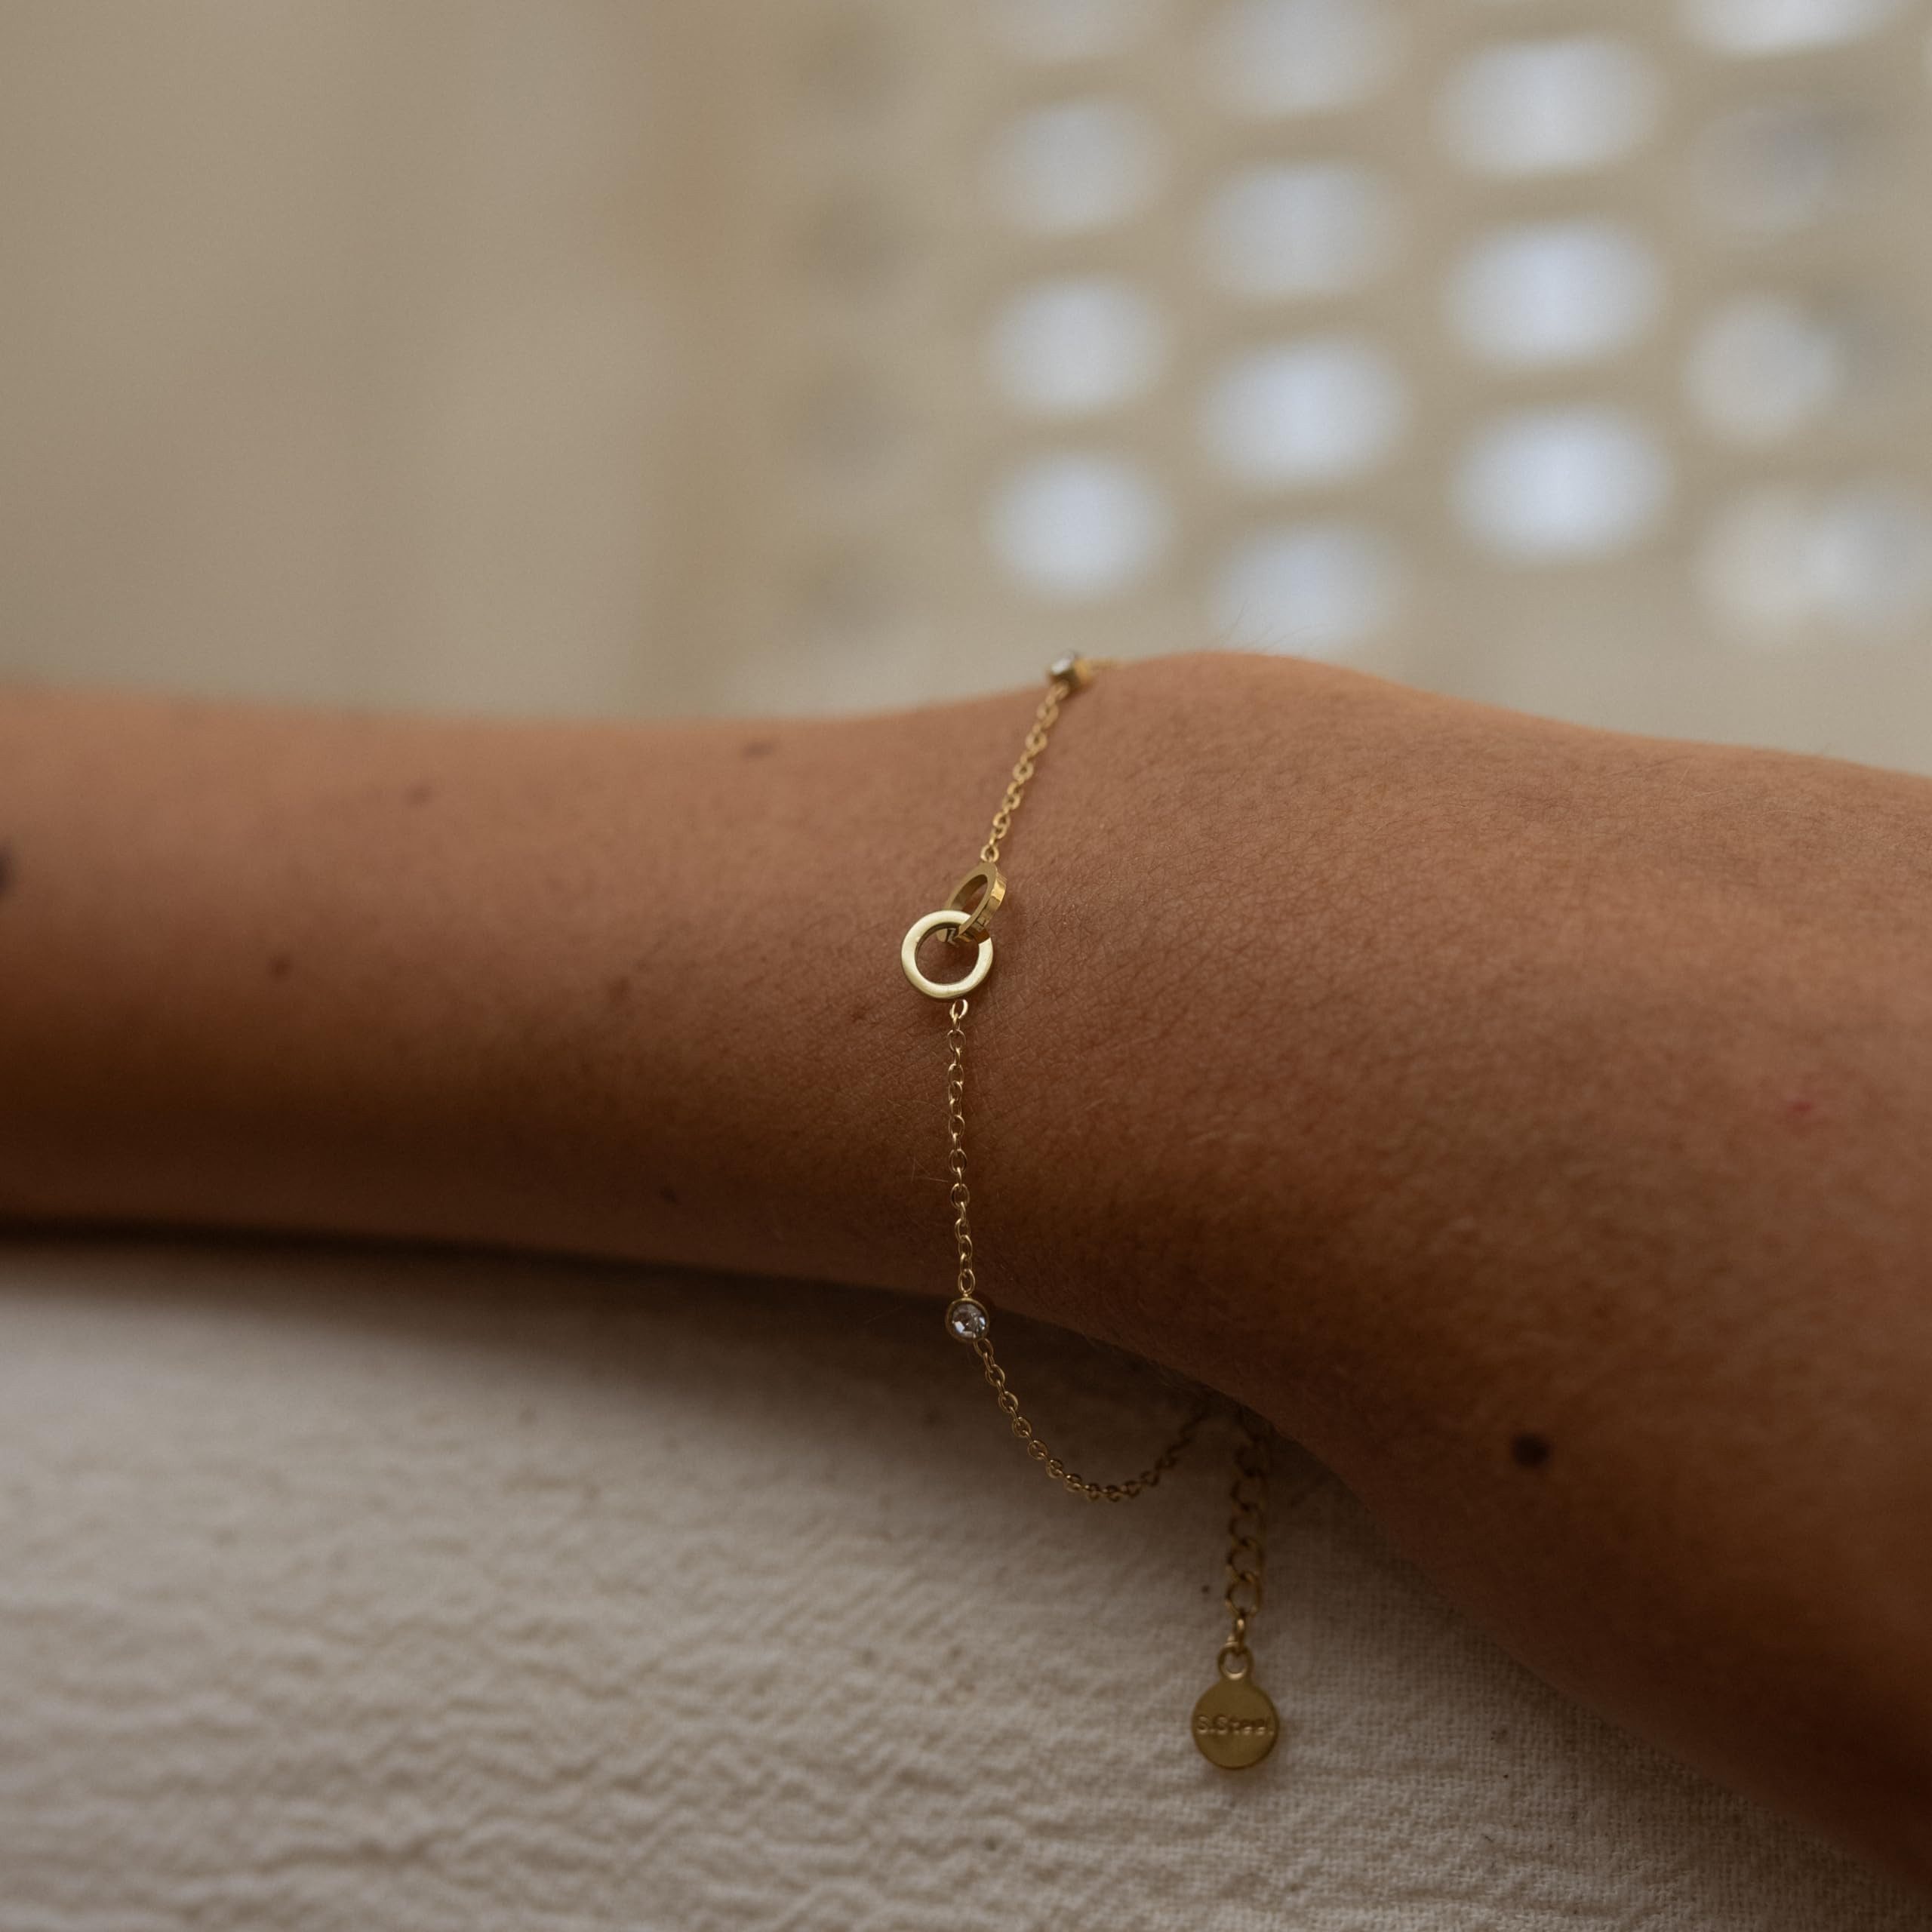 Made by Nami Armband Edelstahl Damen Gold mit zwei Edelsteinen & zwei verwundenen Kreisen, 16 + 4 cm Mutter Tochter Geschenk Wasserfester Schmuck